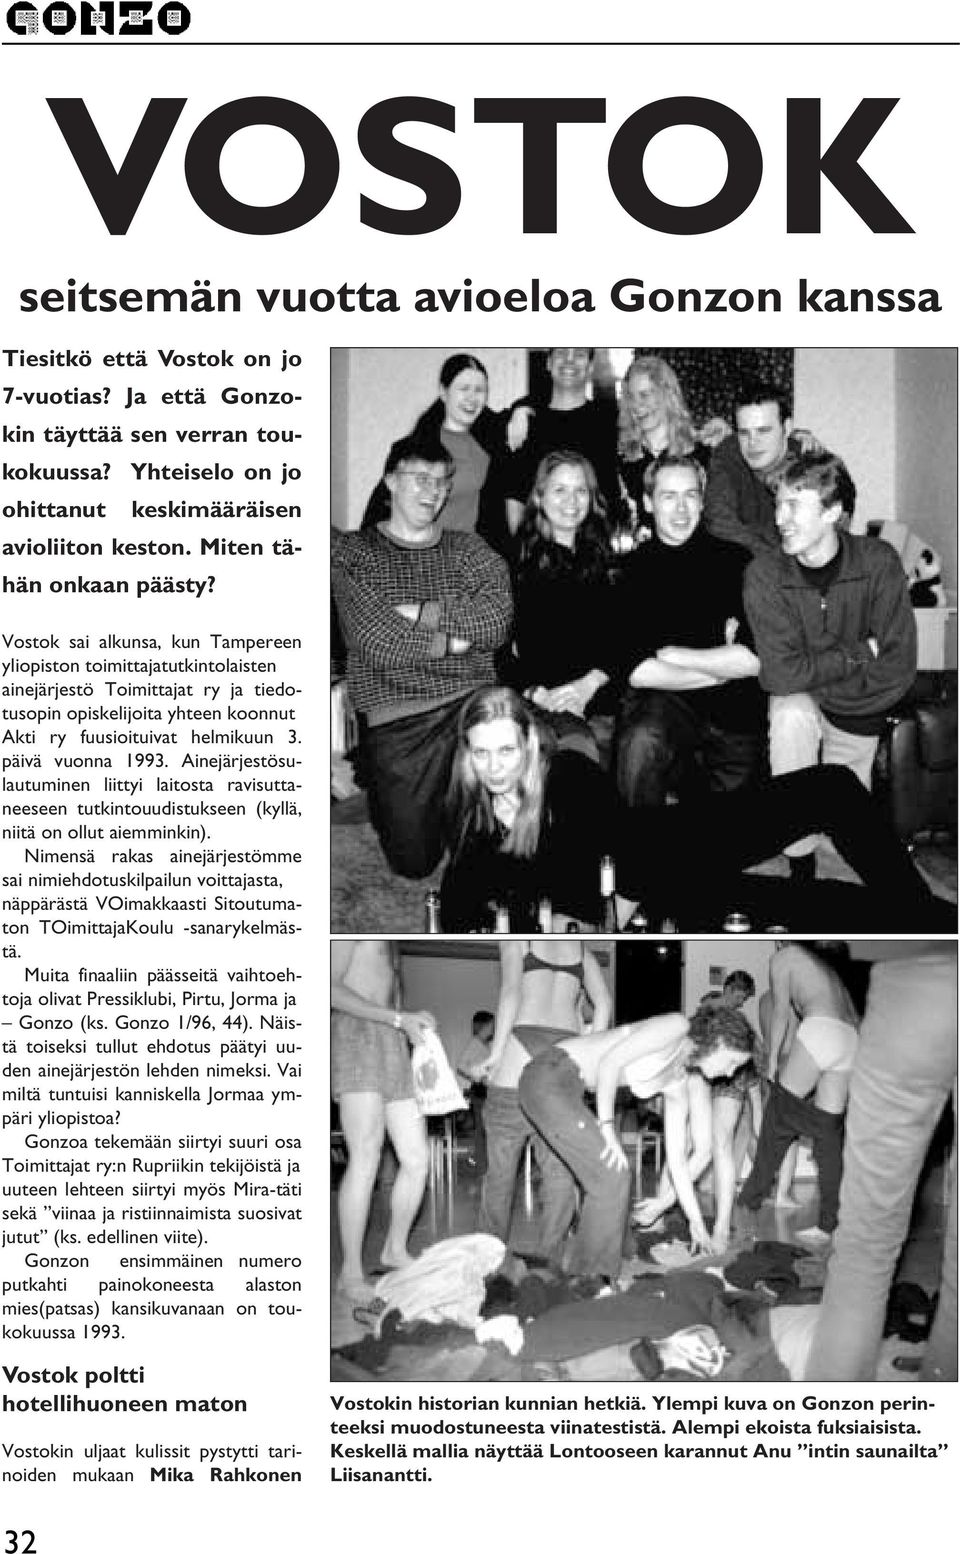 Vostok sai alkunsa, kun Tampereen yliopiston toimittajatutkintolaisten ainejärjestö Toimittajat ry ja tiedotusopin opiskelijoita yhteen koonnut Akti ry fuusioituivat helmikuun 3. päivä vuonna 1993.